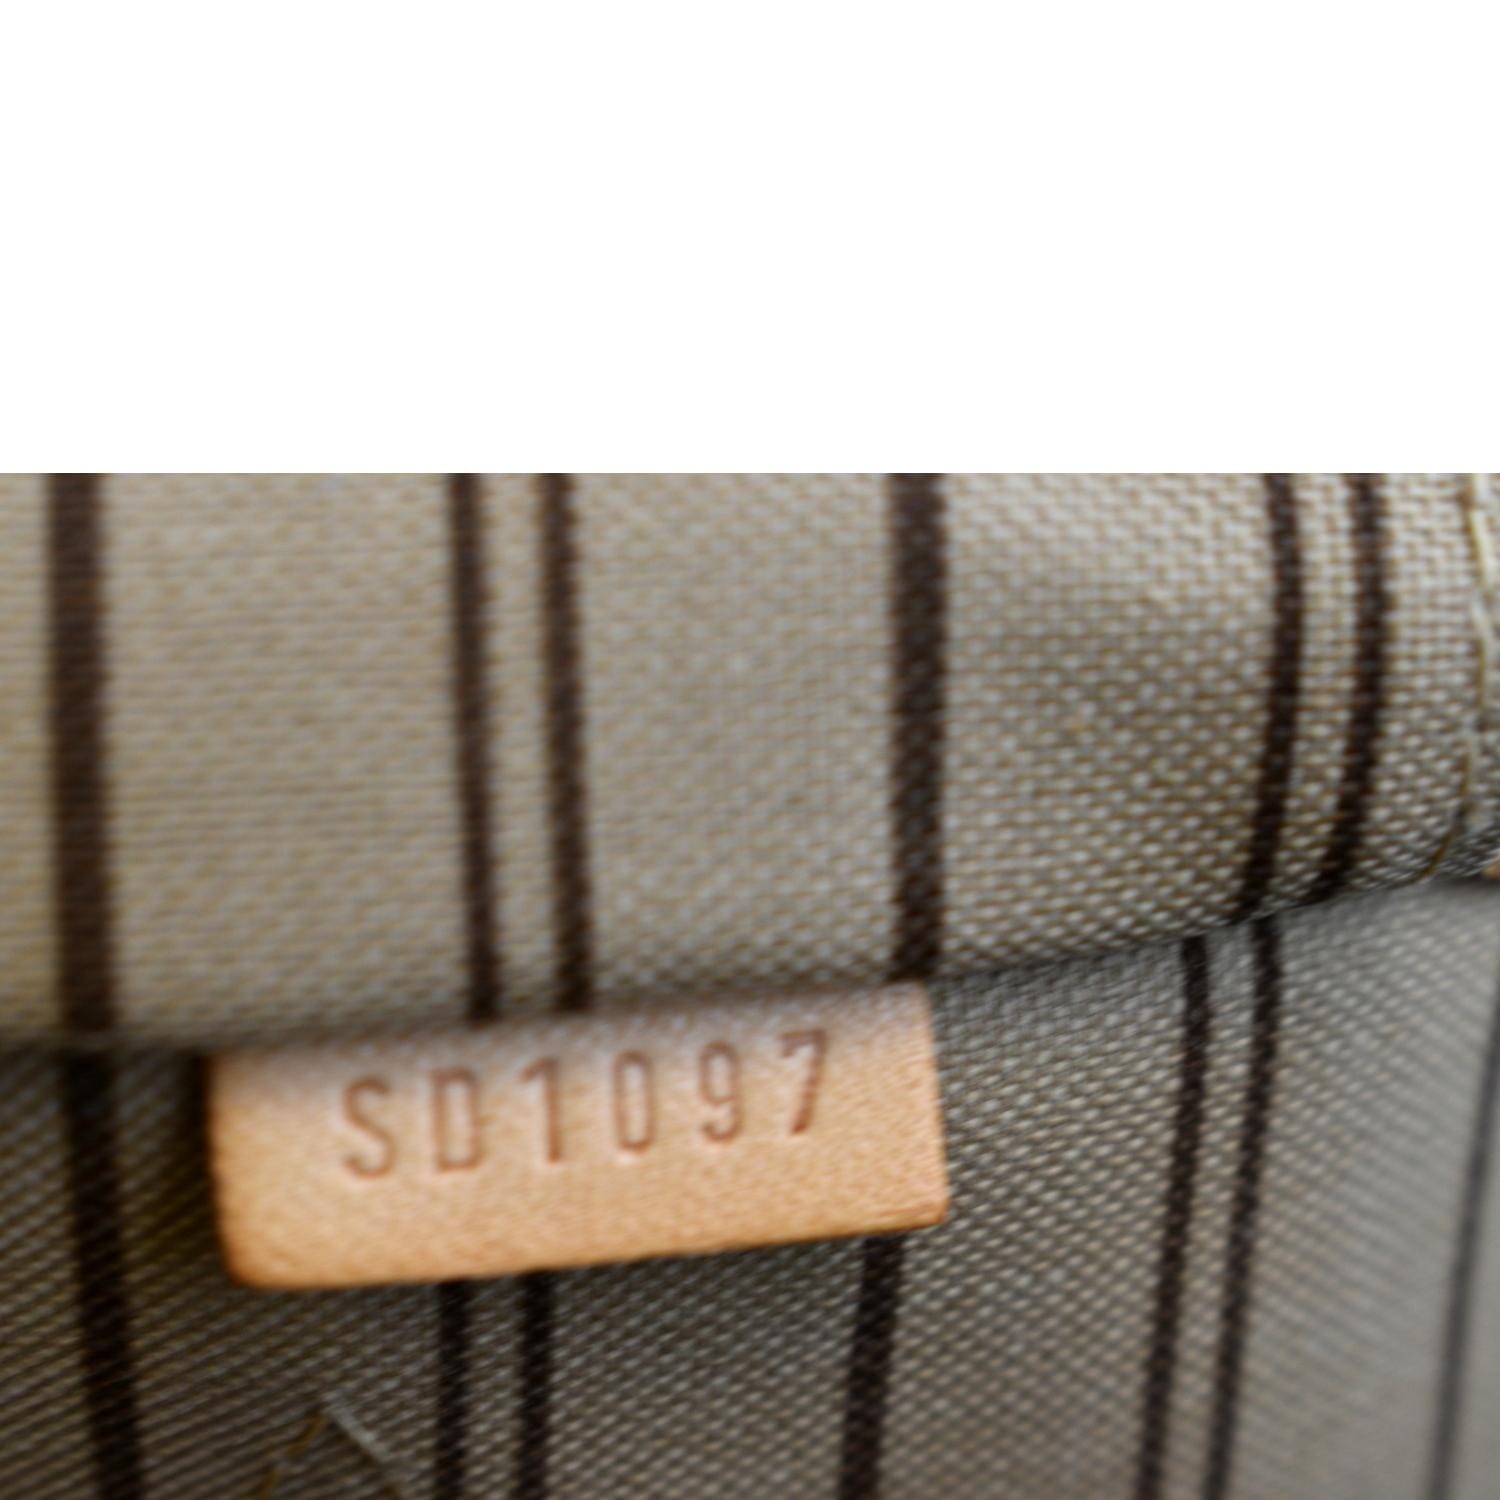 Totally handbag Louis Vuitton Brown in Cotton - 37205660